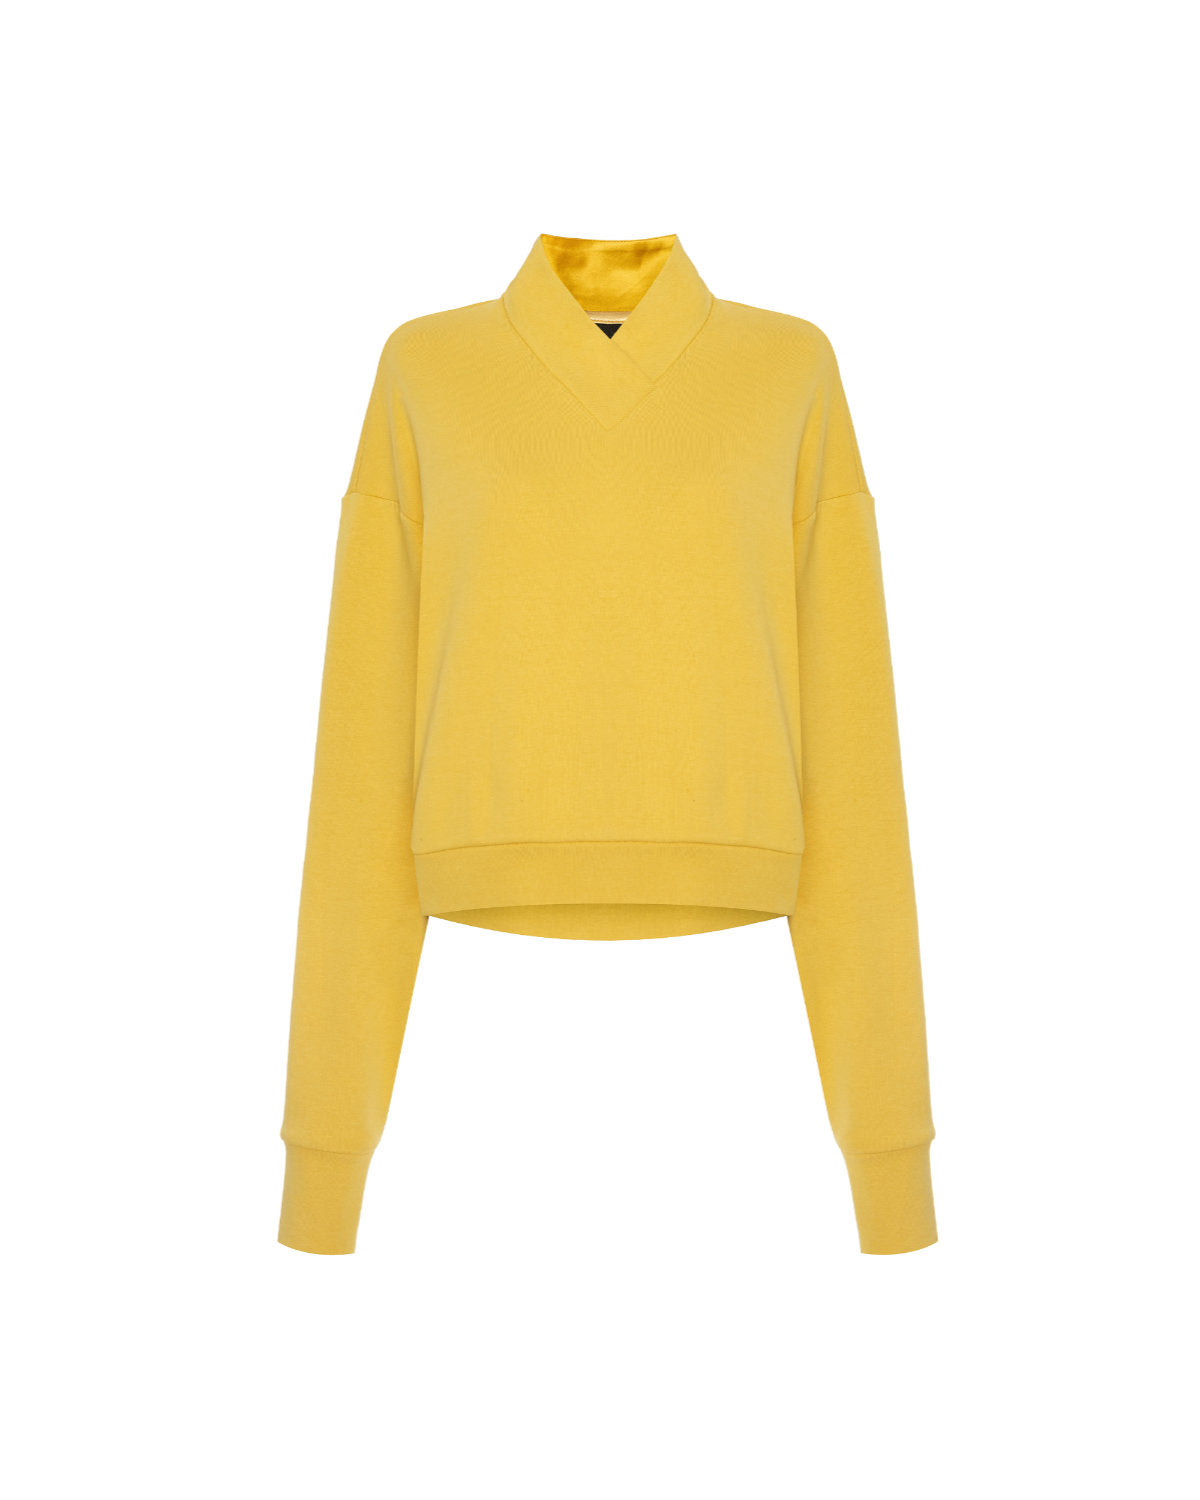 03 Sweatshirt yellow